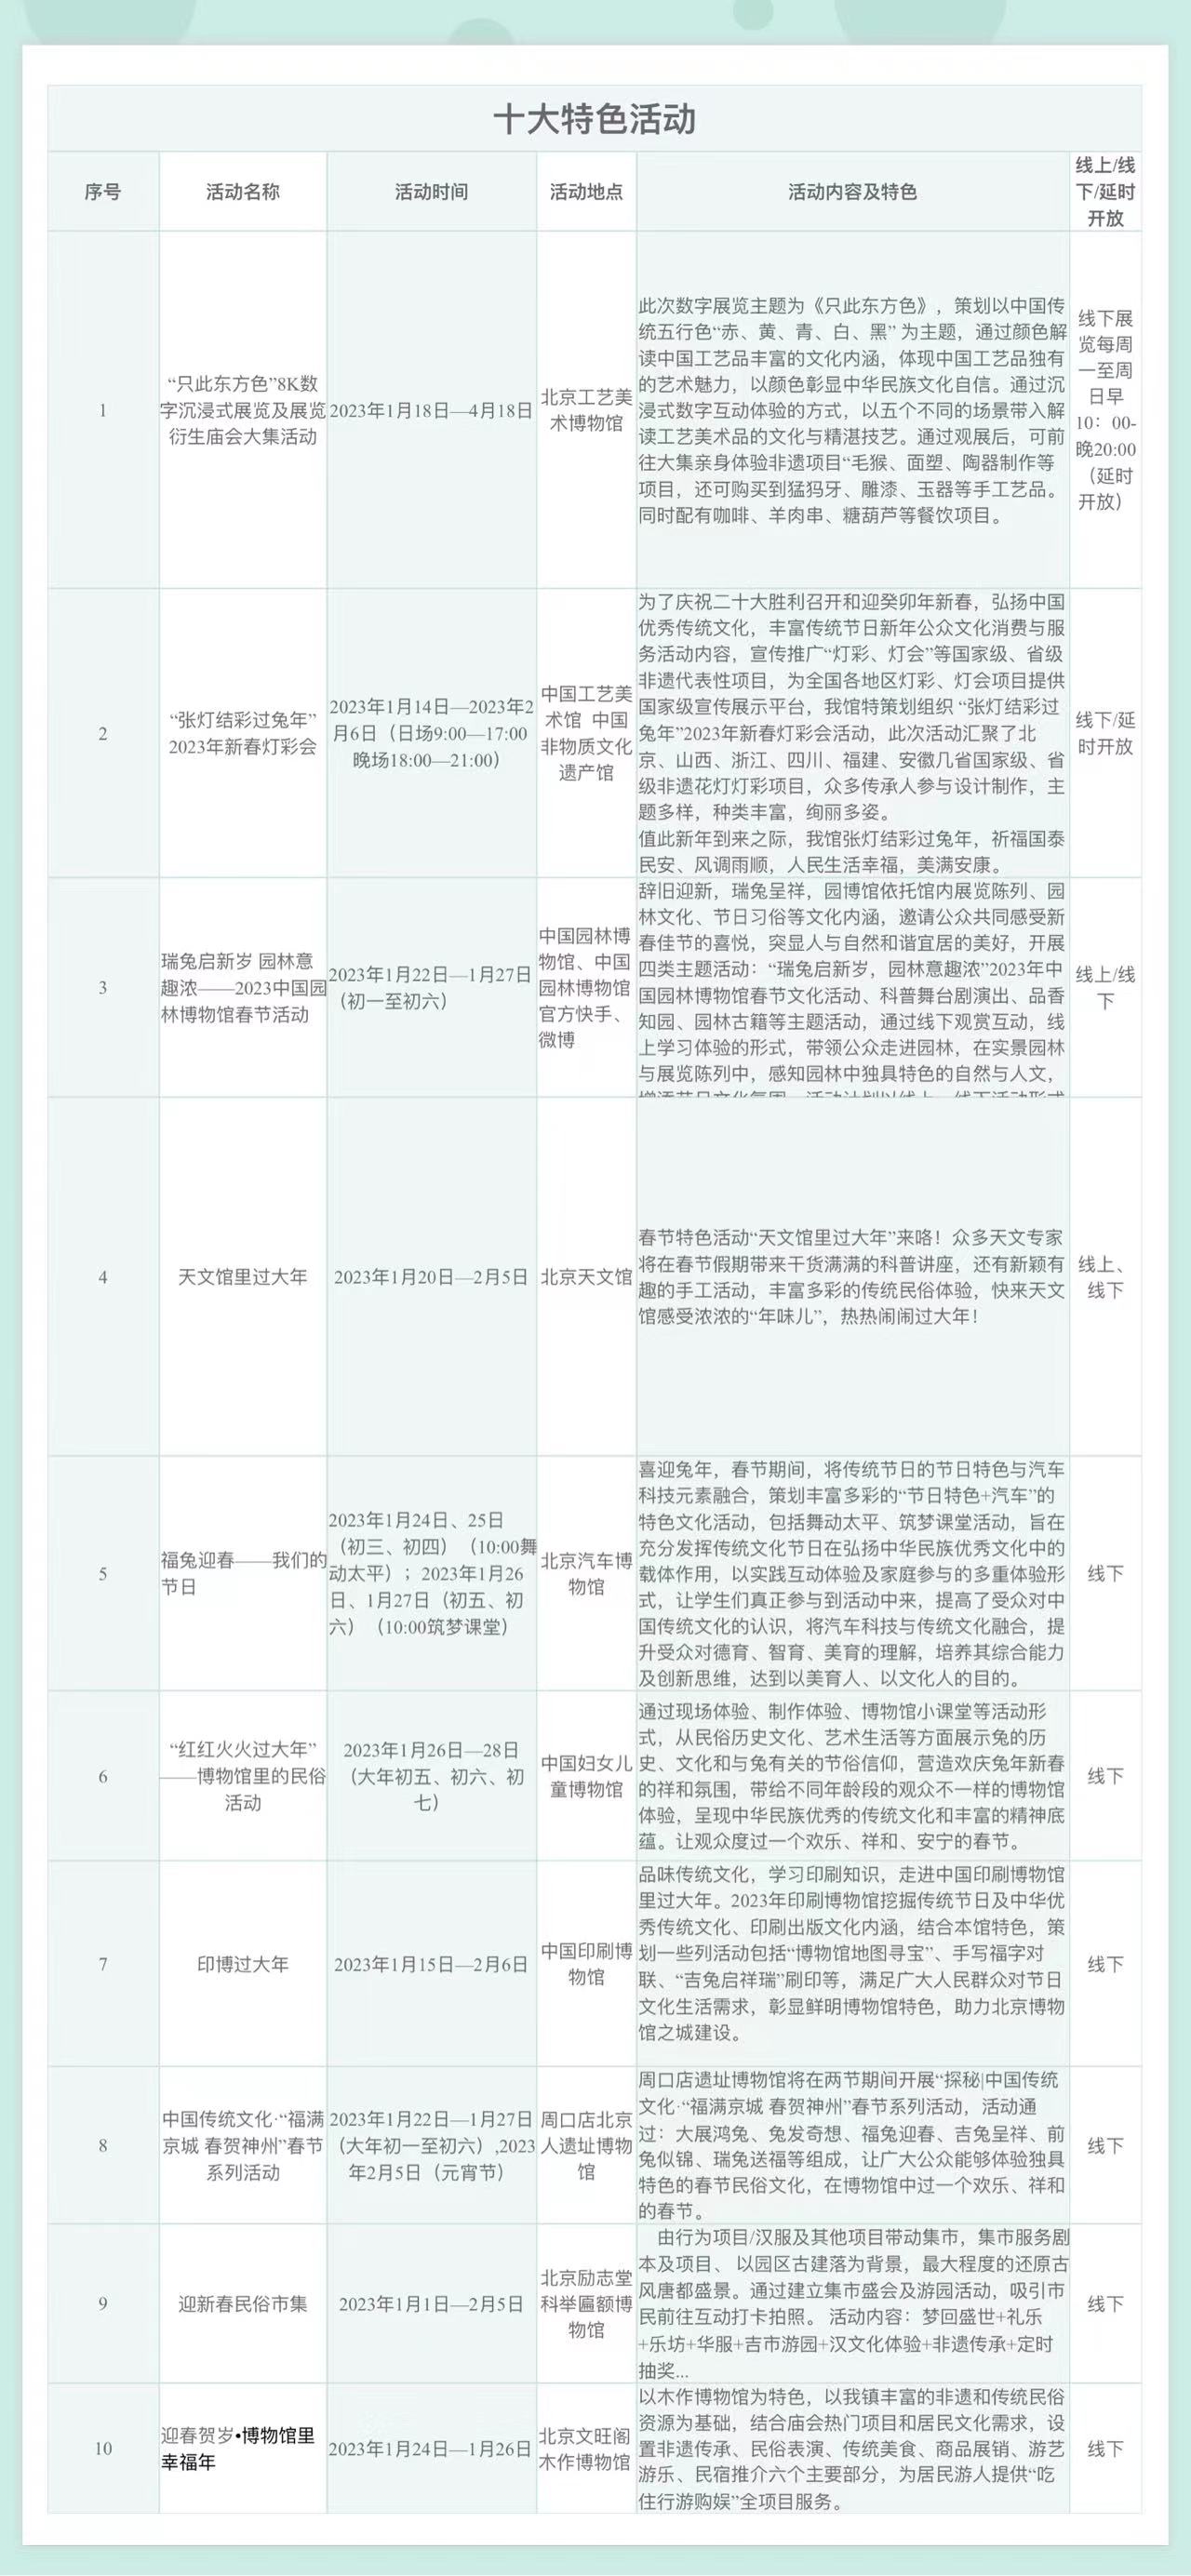 十大特色活动。北京市文物局供图